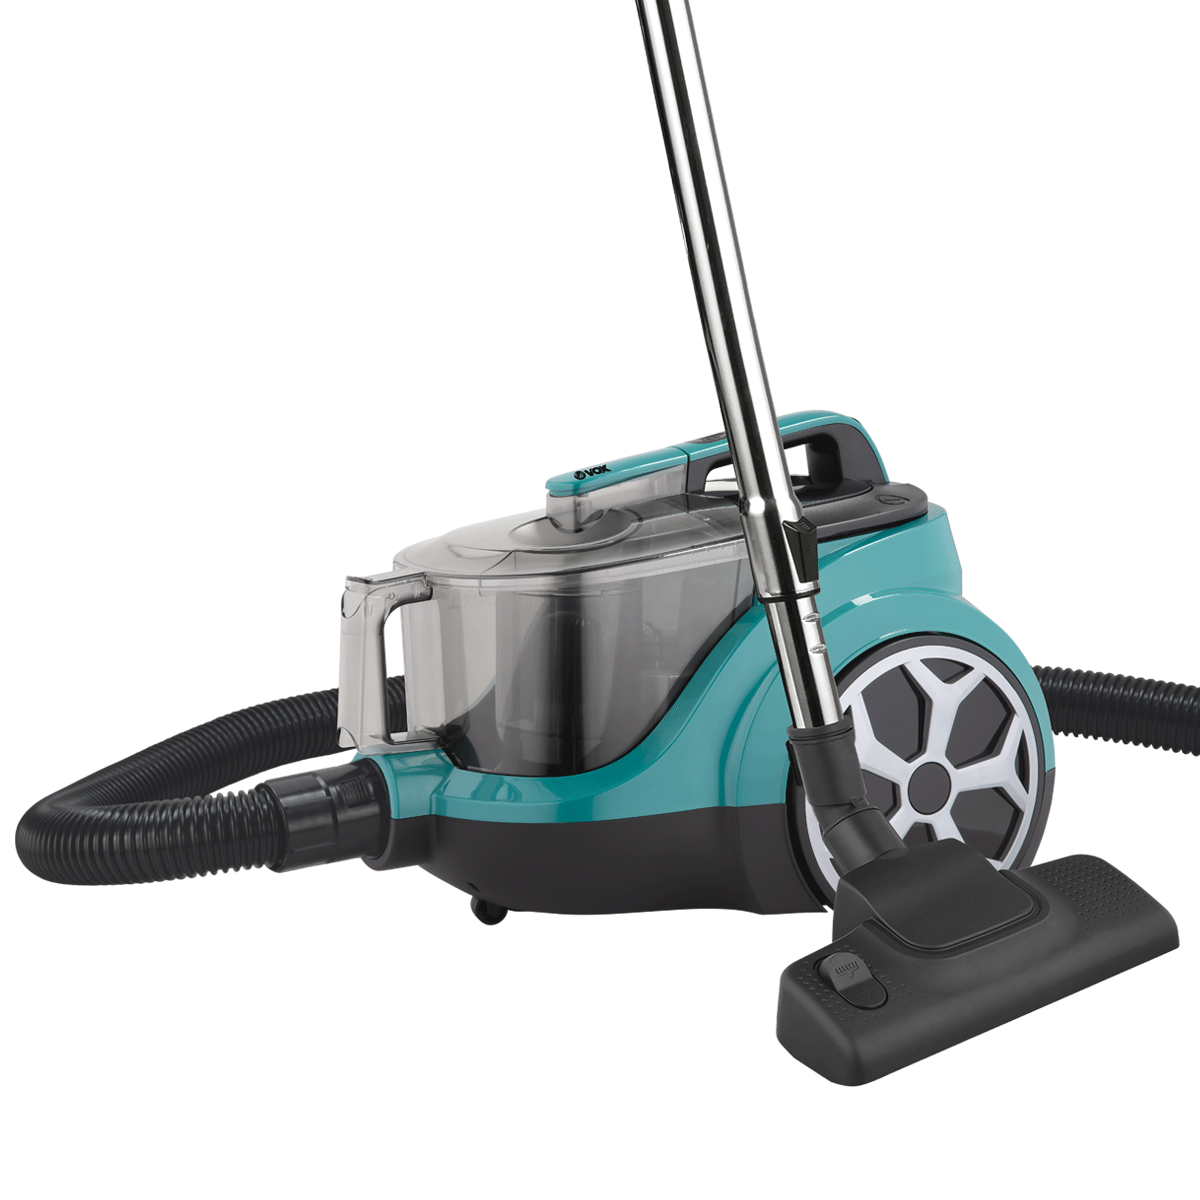 Vacuum cleaner SL806 